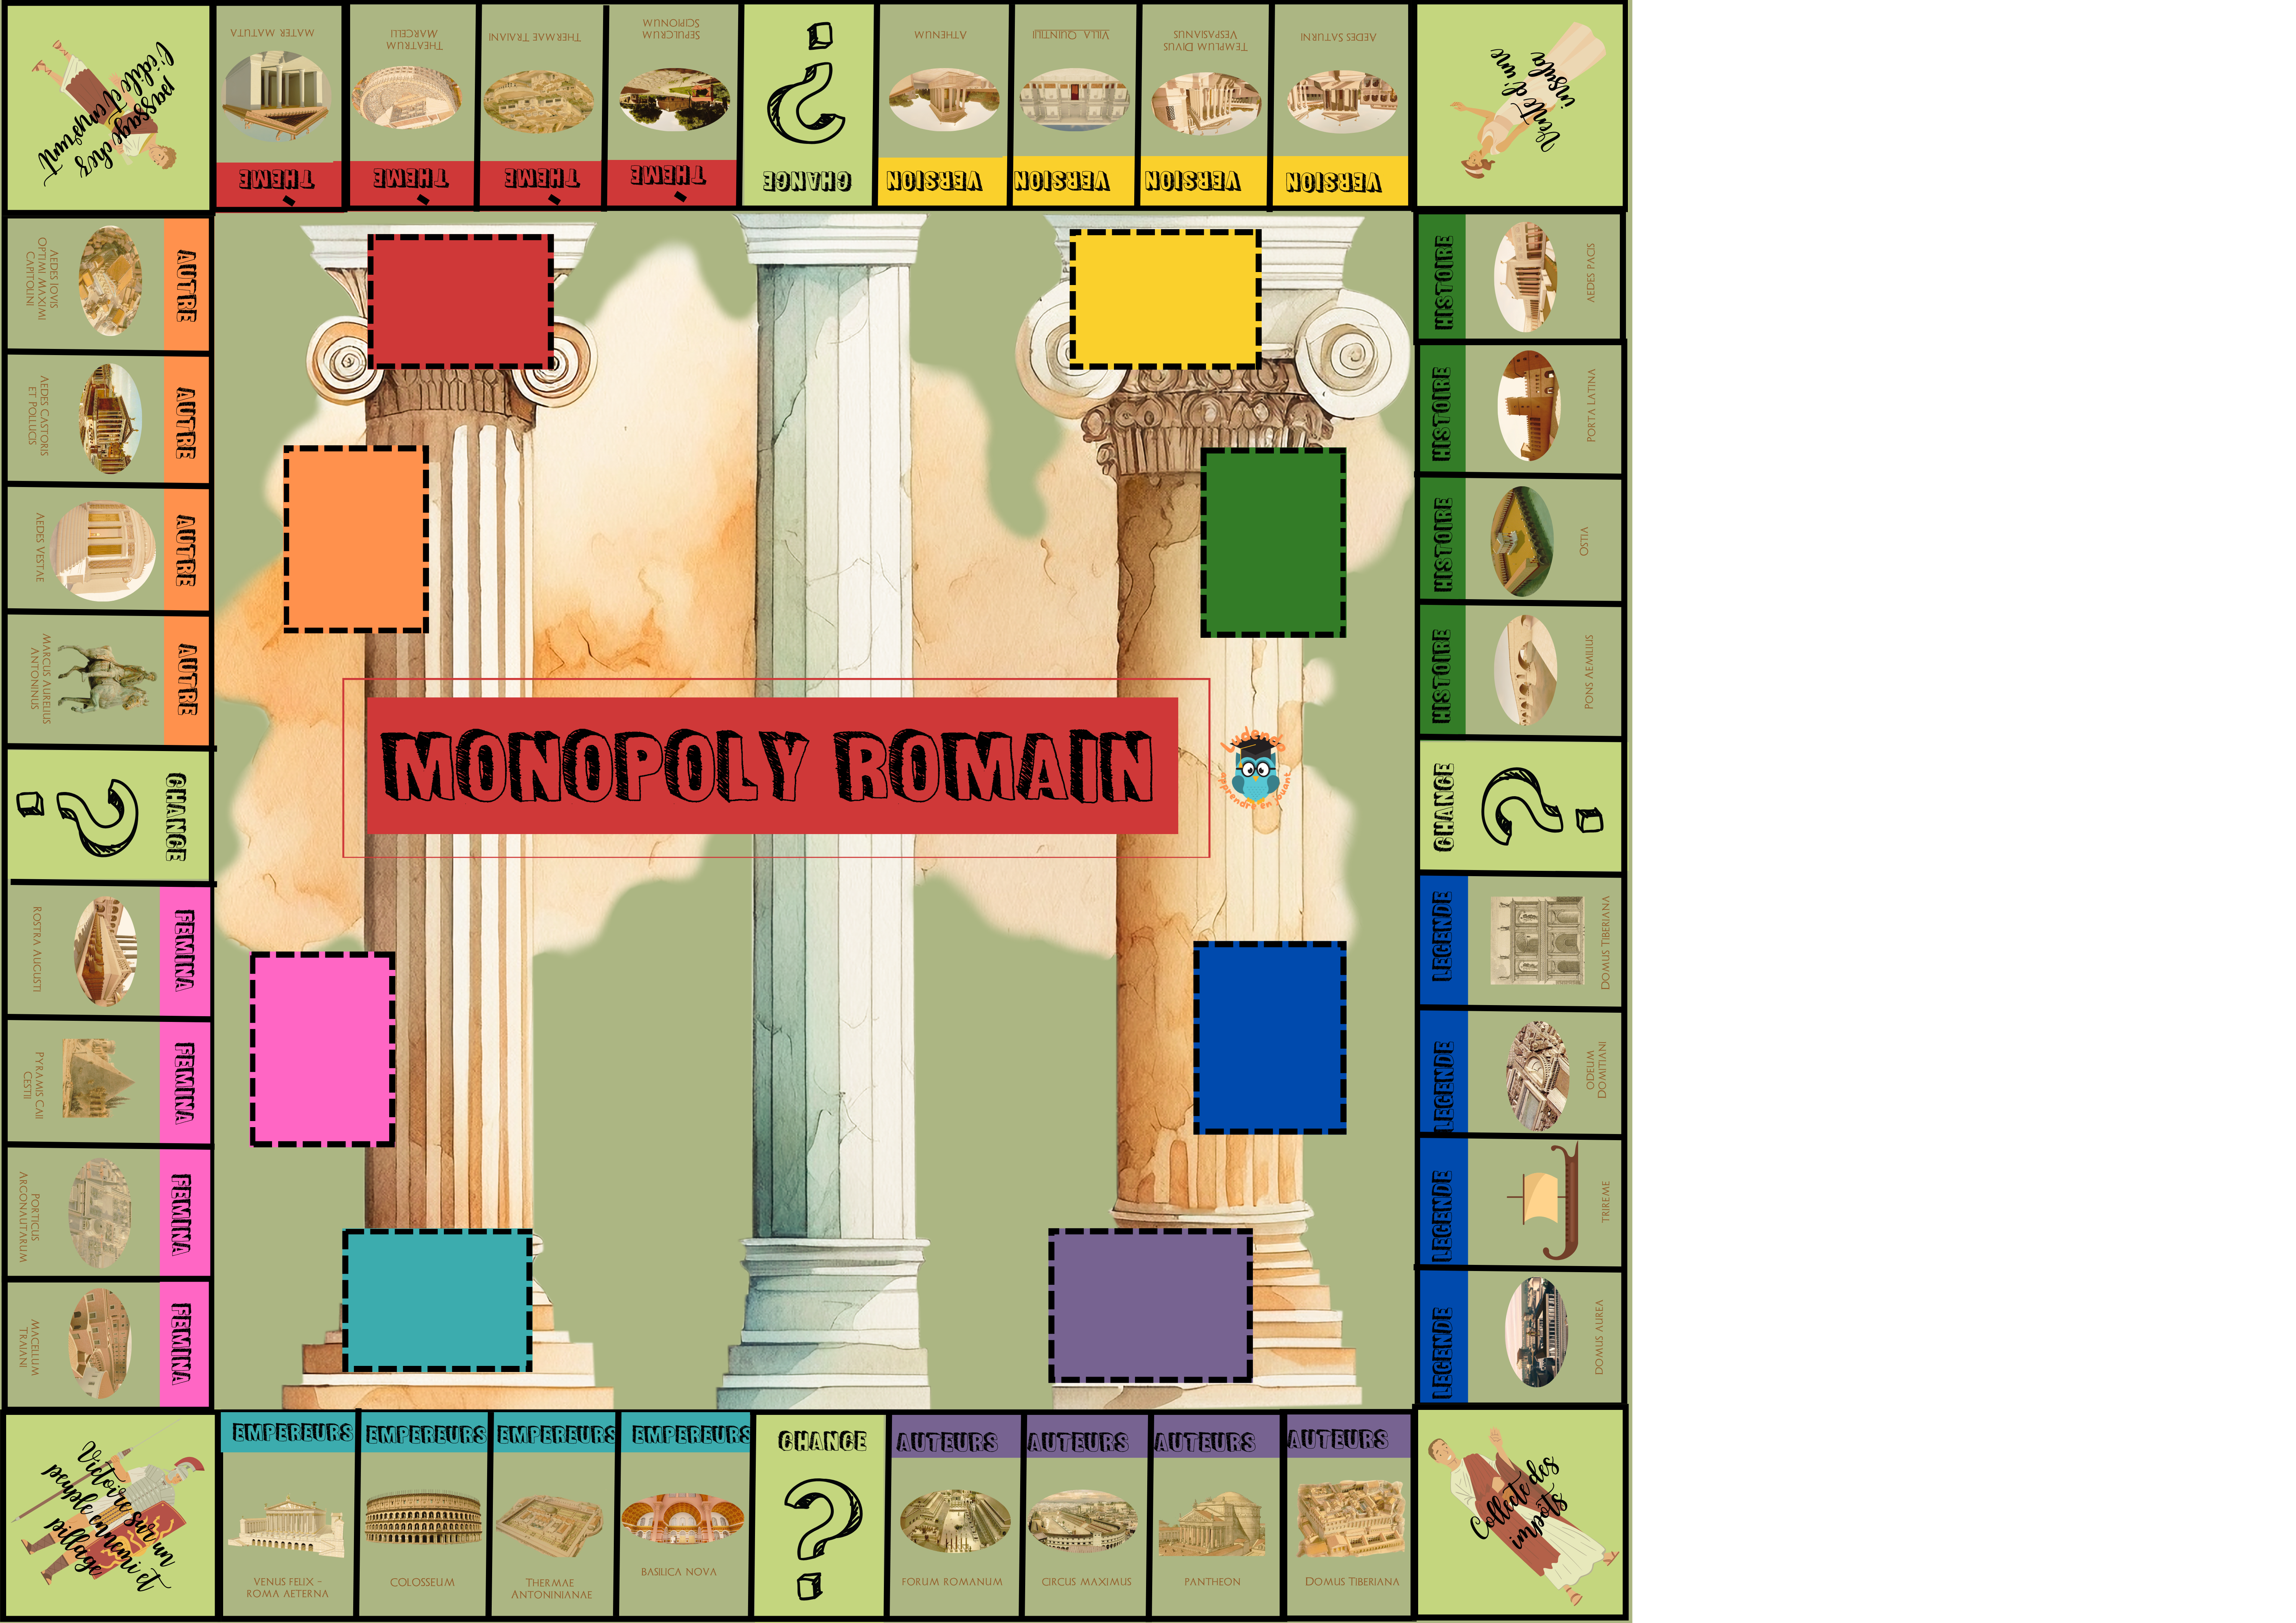 Monopoly romain